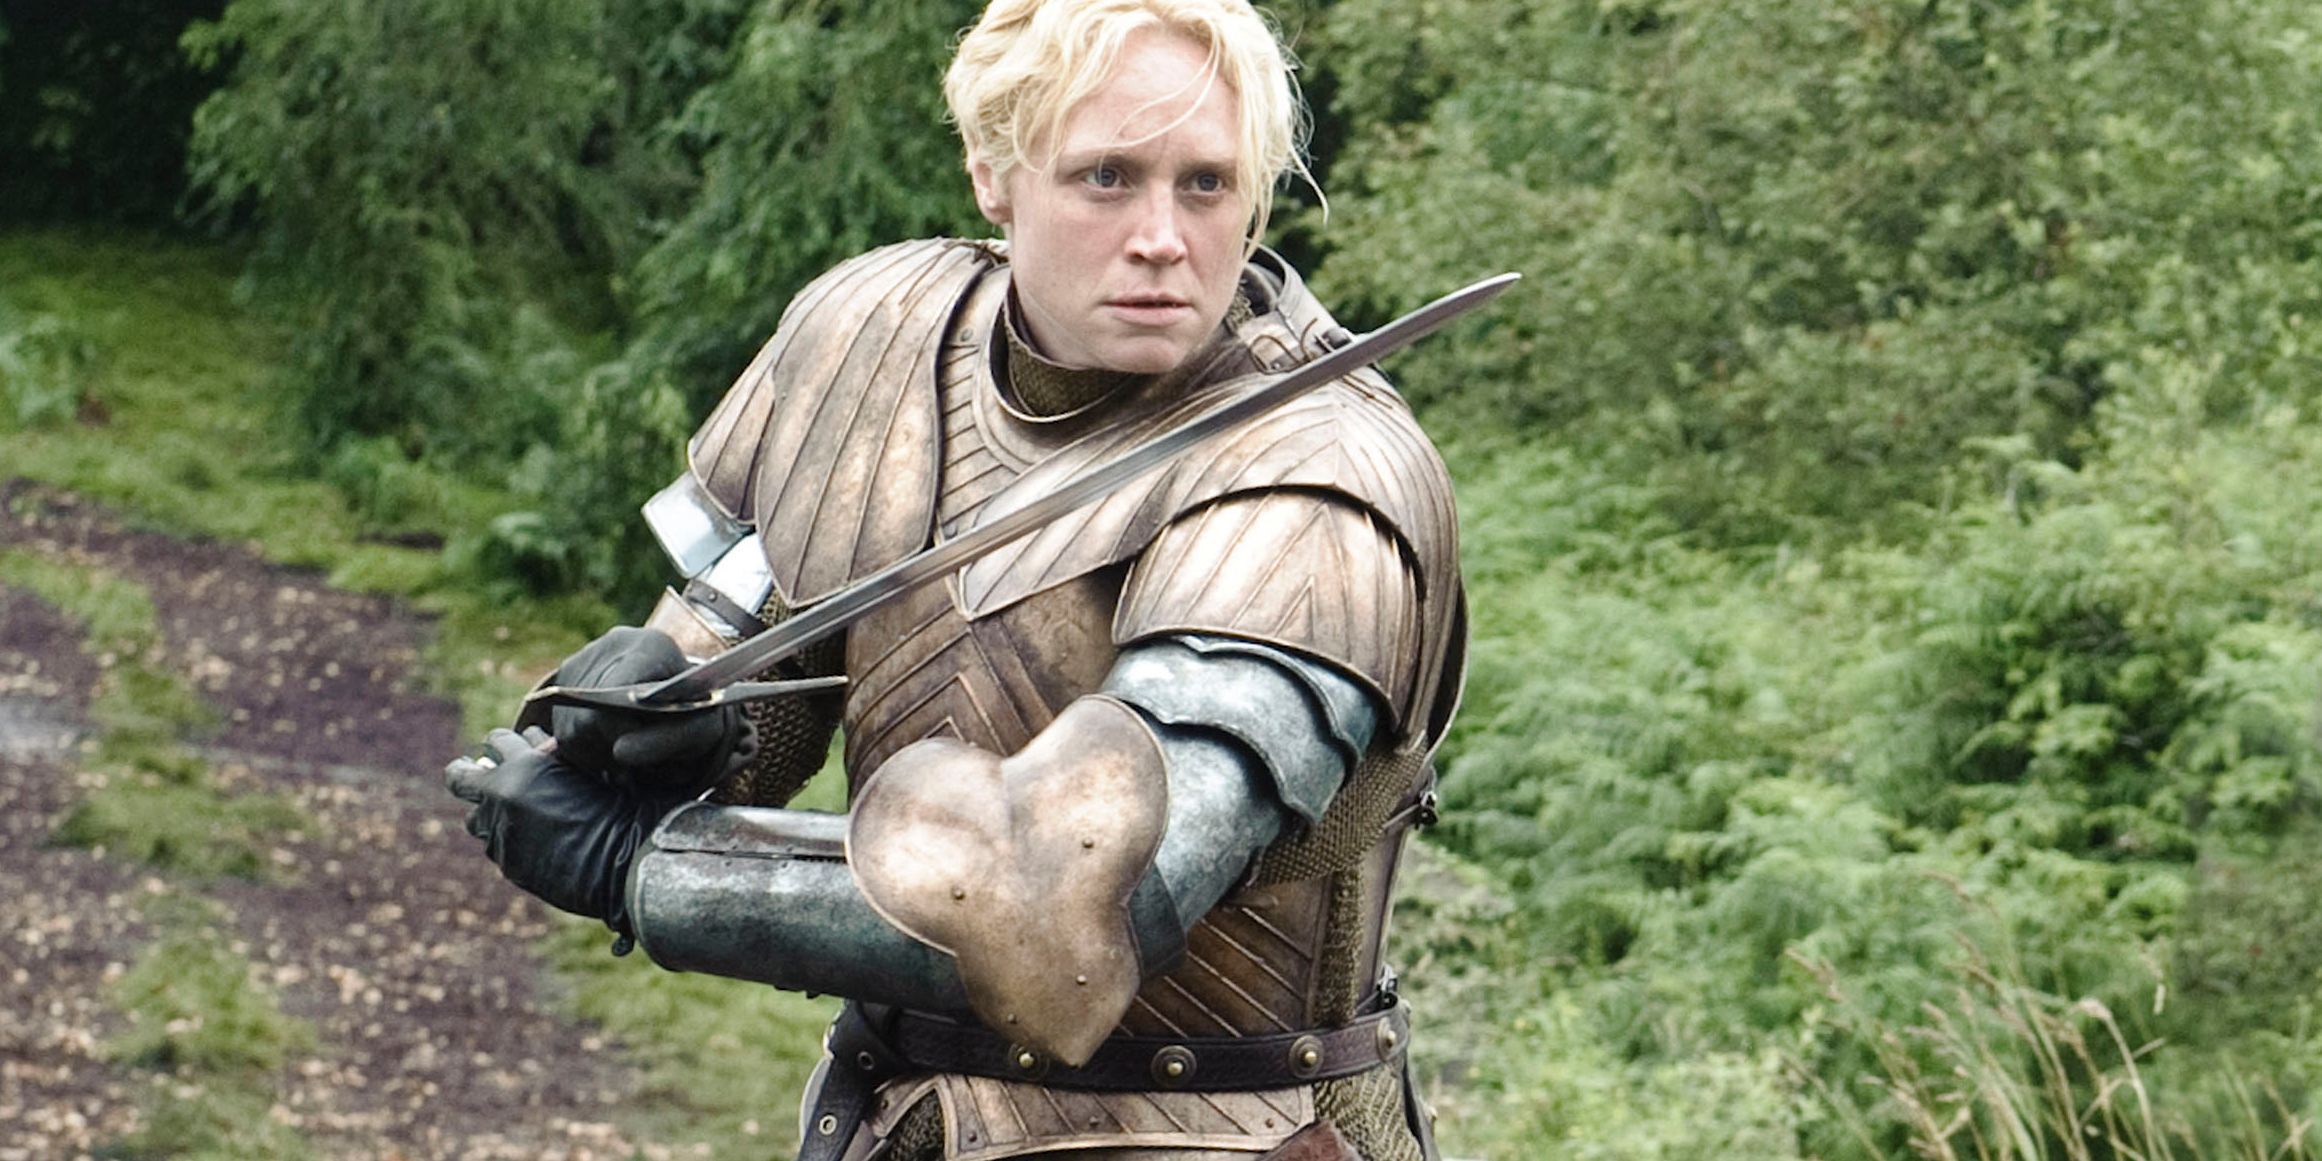 GOT Ser Brienne Of Tarth Sword skills